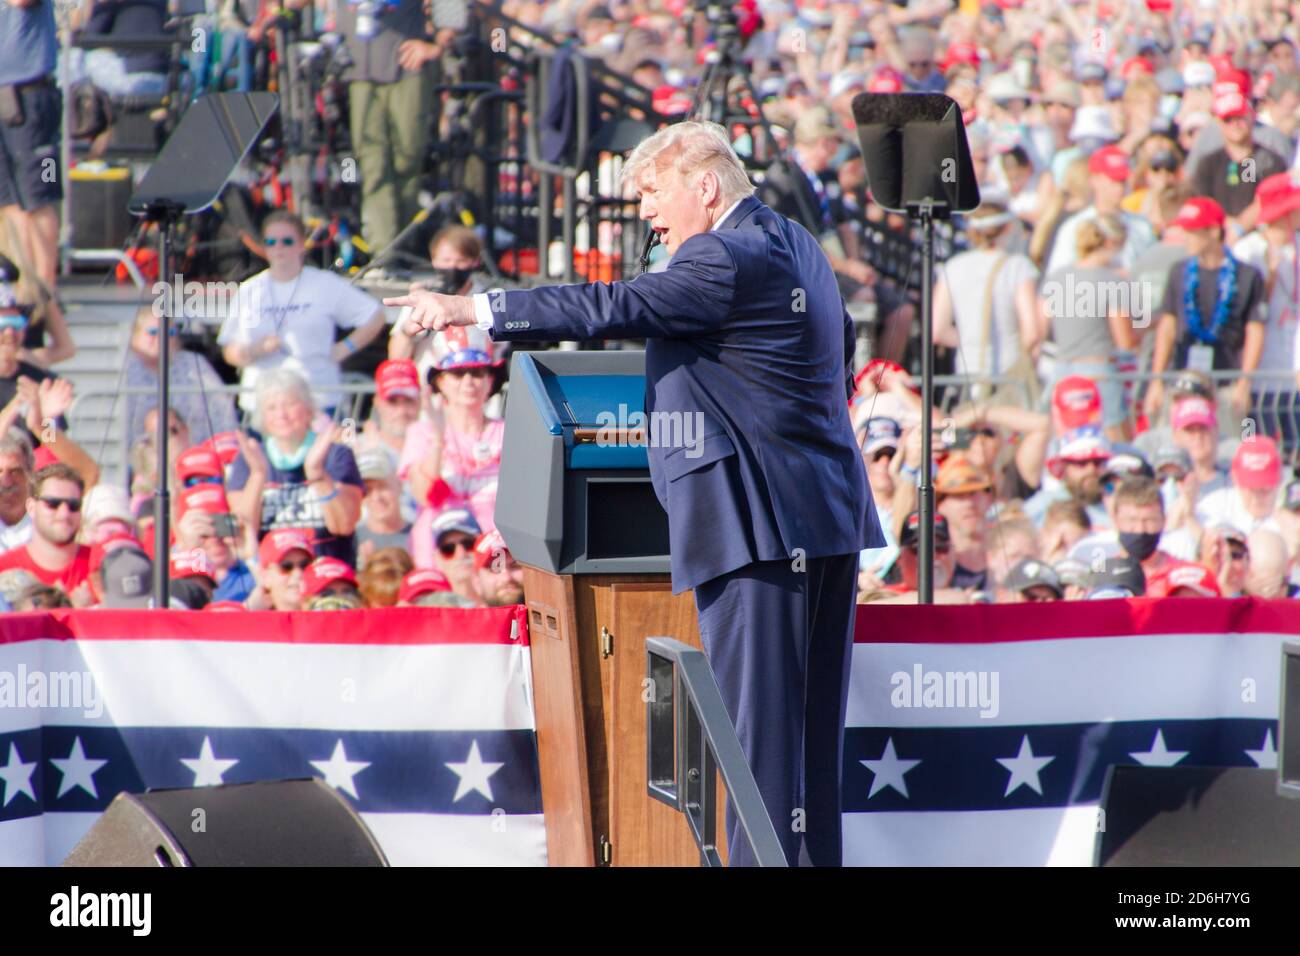 Le président Donald J Trump sur scène lors d'une campagne républicaine Rassemblement à l'aéroport d'Ocala dans le centre de la Floride le 16 octobre 202 Banque D'Images